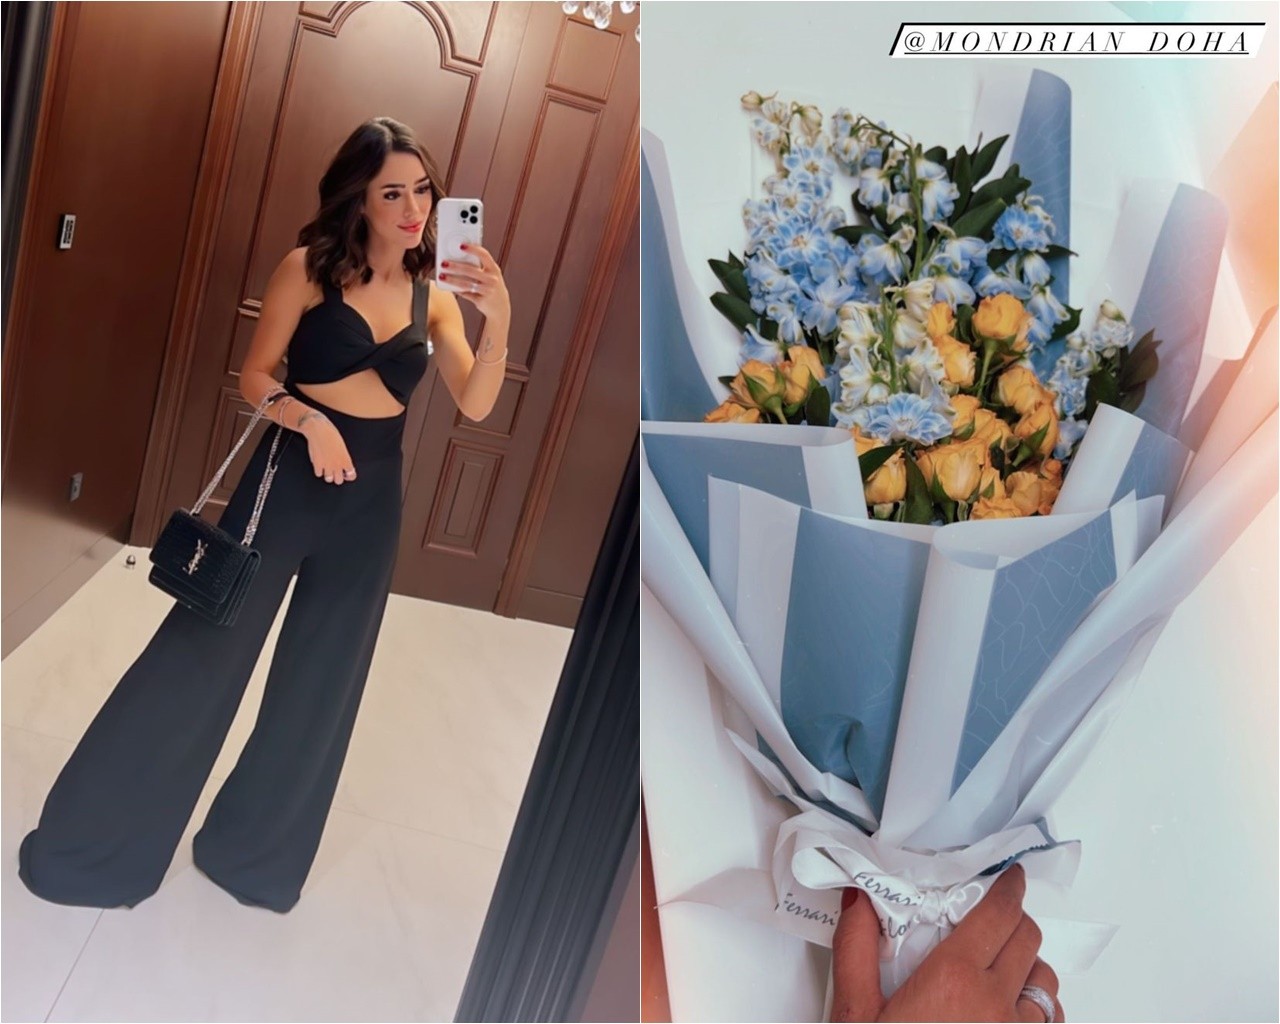 Bruna Biancardi recebeu flores de Neymar em viagem ao Catar (Foto: Reprodução/Instagram)